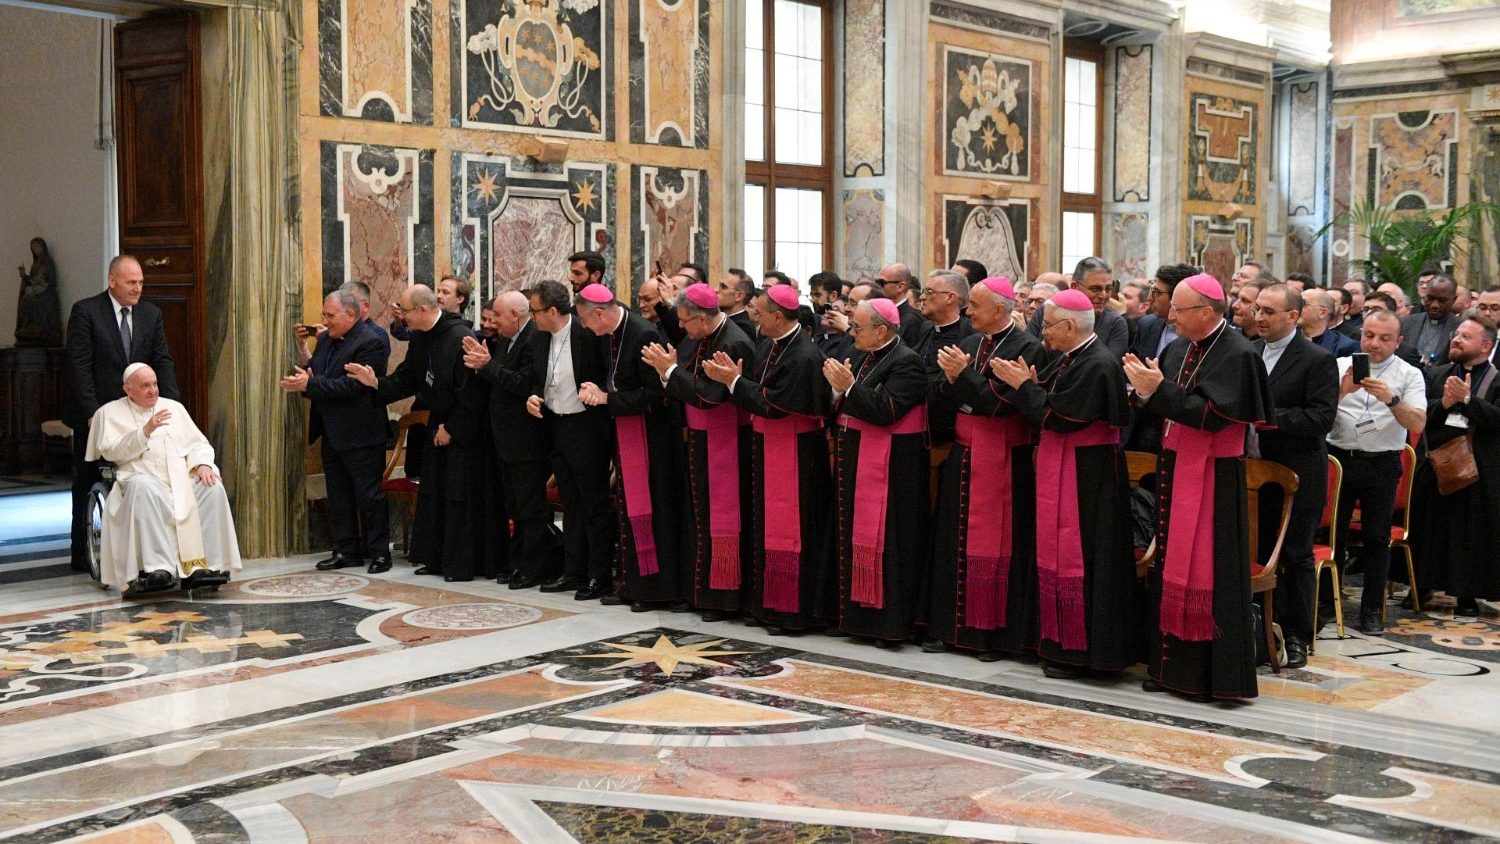 ĐTC gặp gỡ các giám mục và linh mục miền Sicilia